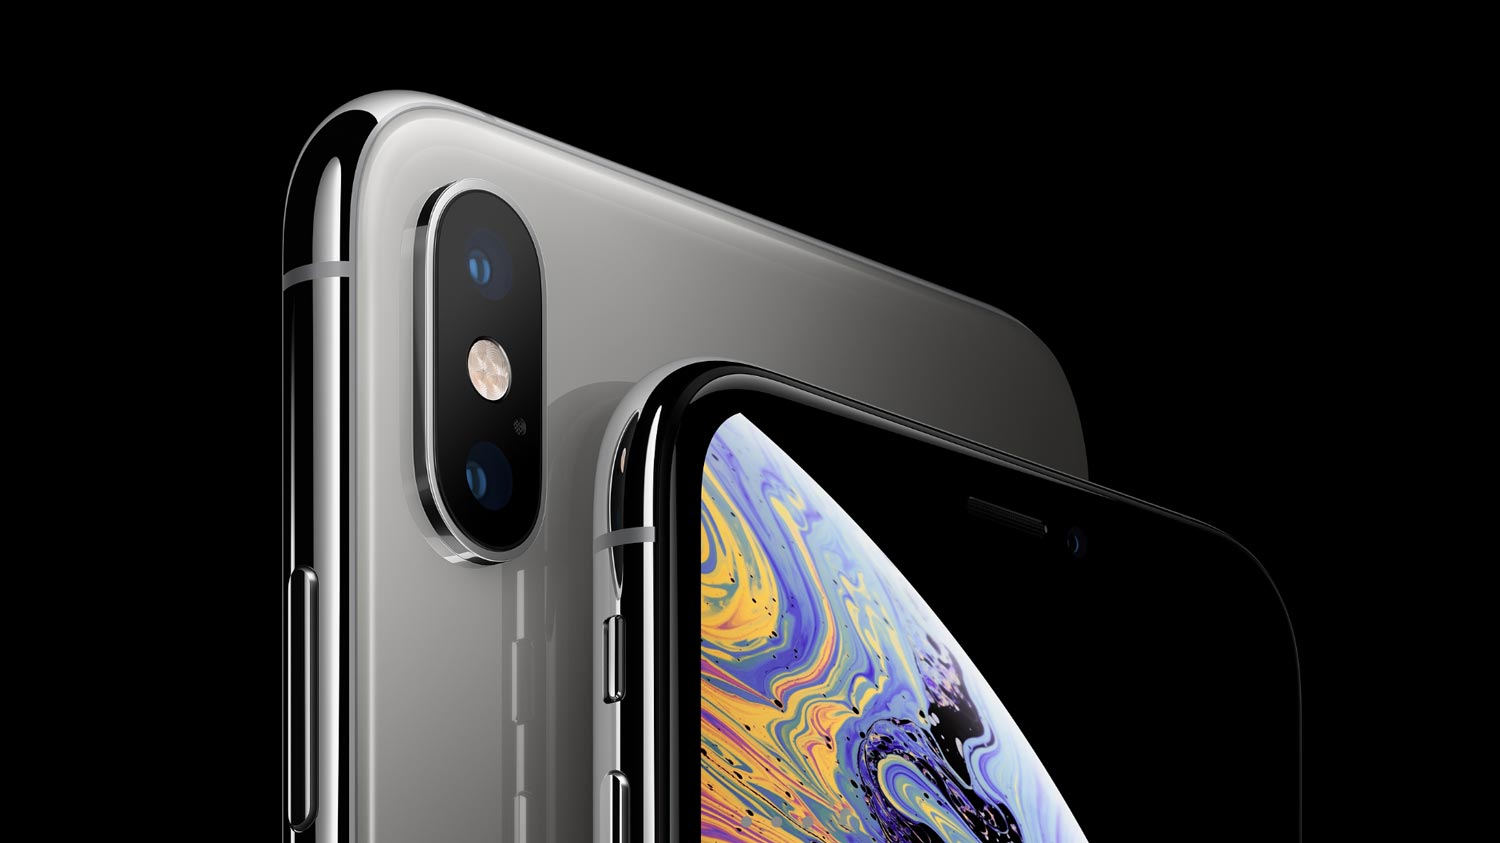 Apple Dilaporkan Perlu Membayar Penalti Kepada Samsung Kerana Jualan iPhone Yang Rendah